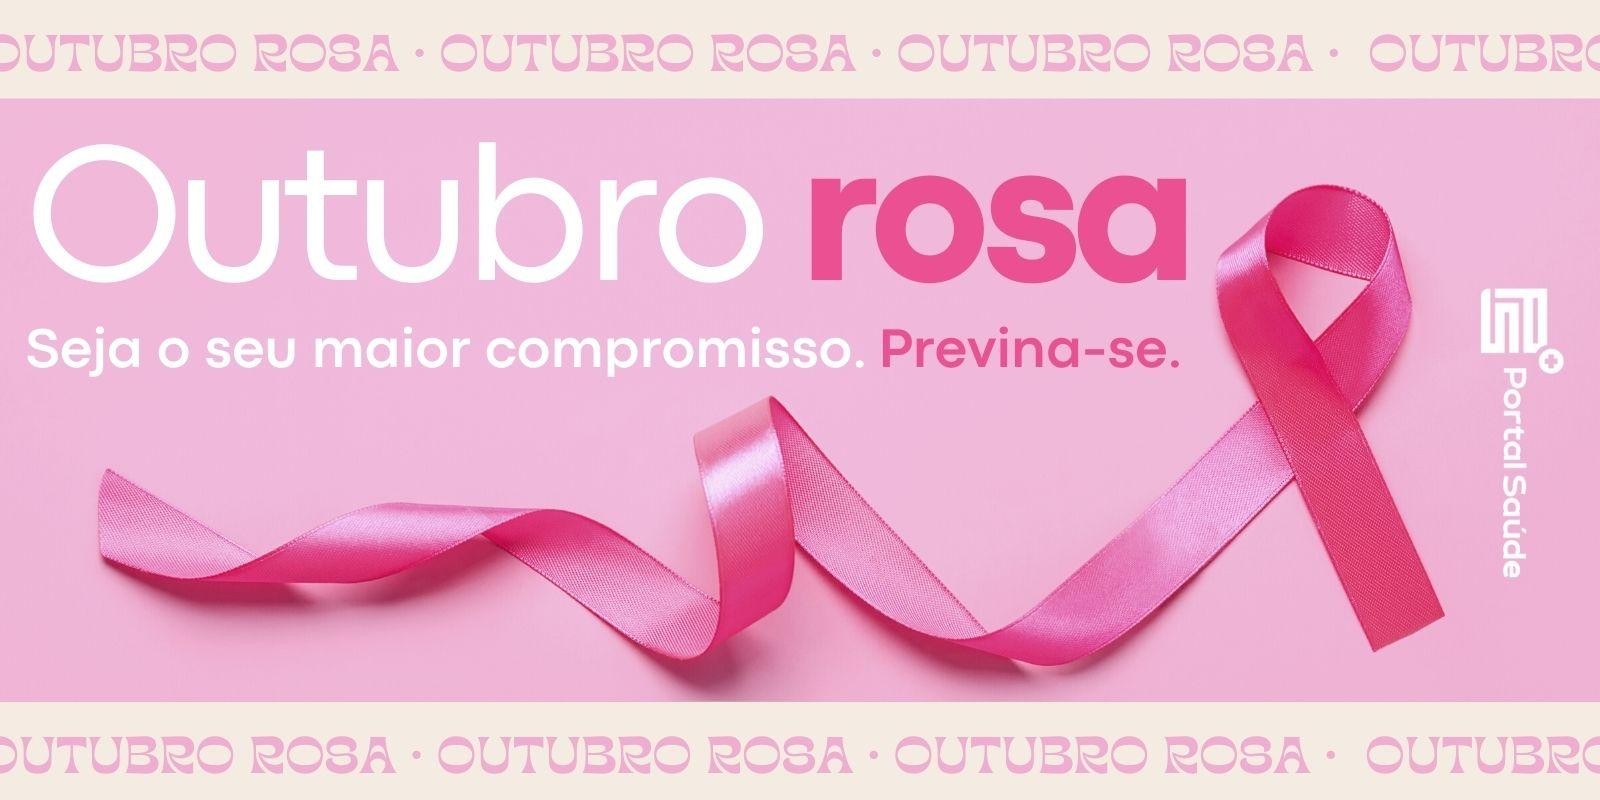 Outubro Rosa: Unidos pela Conscientização e Prevenção do Câncer de Mama